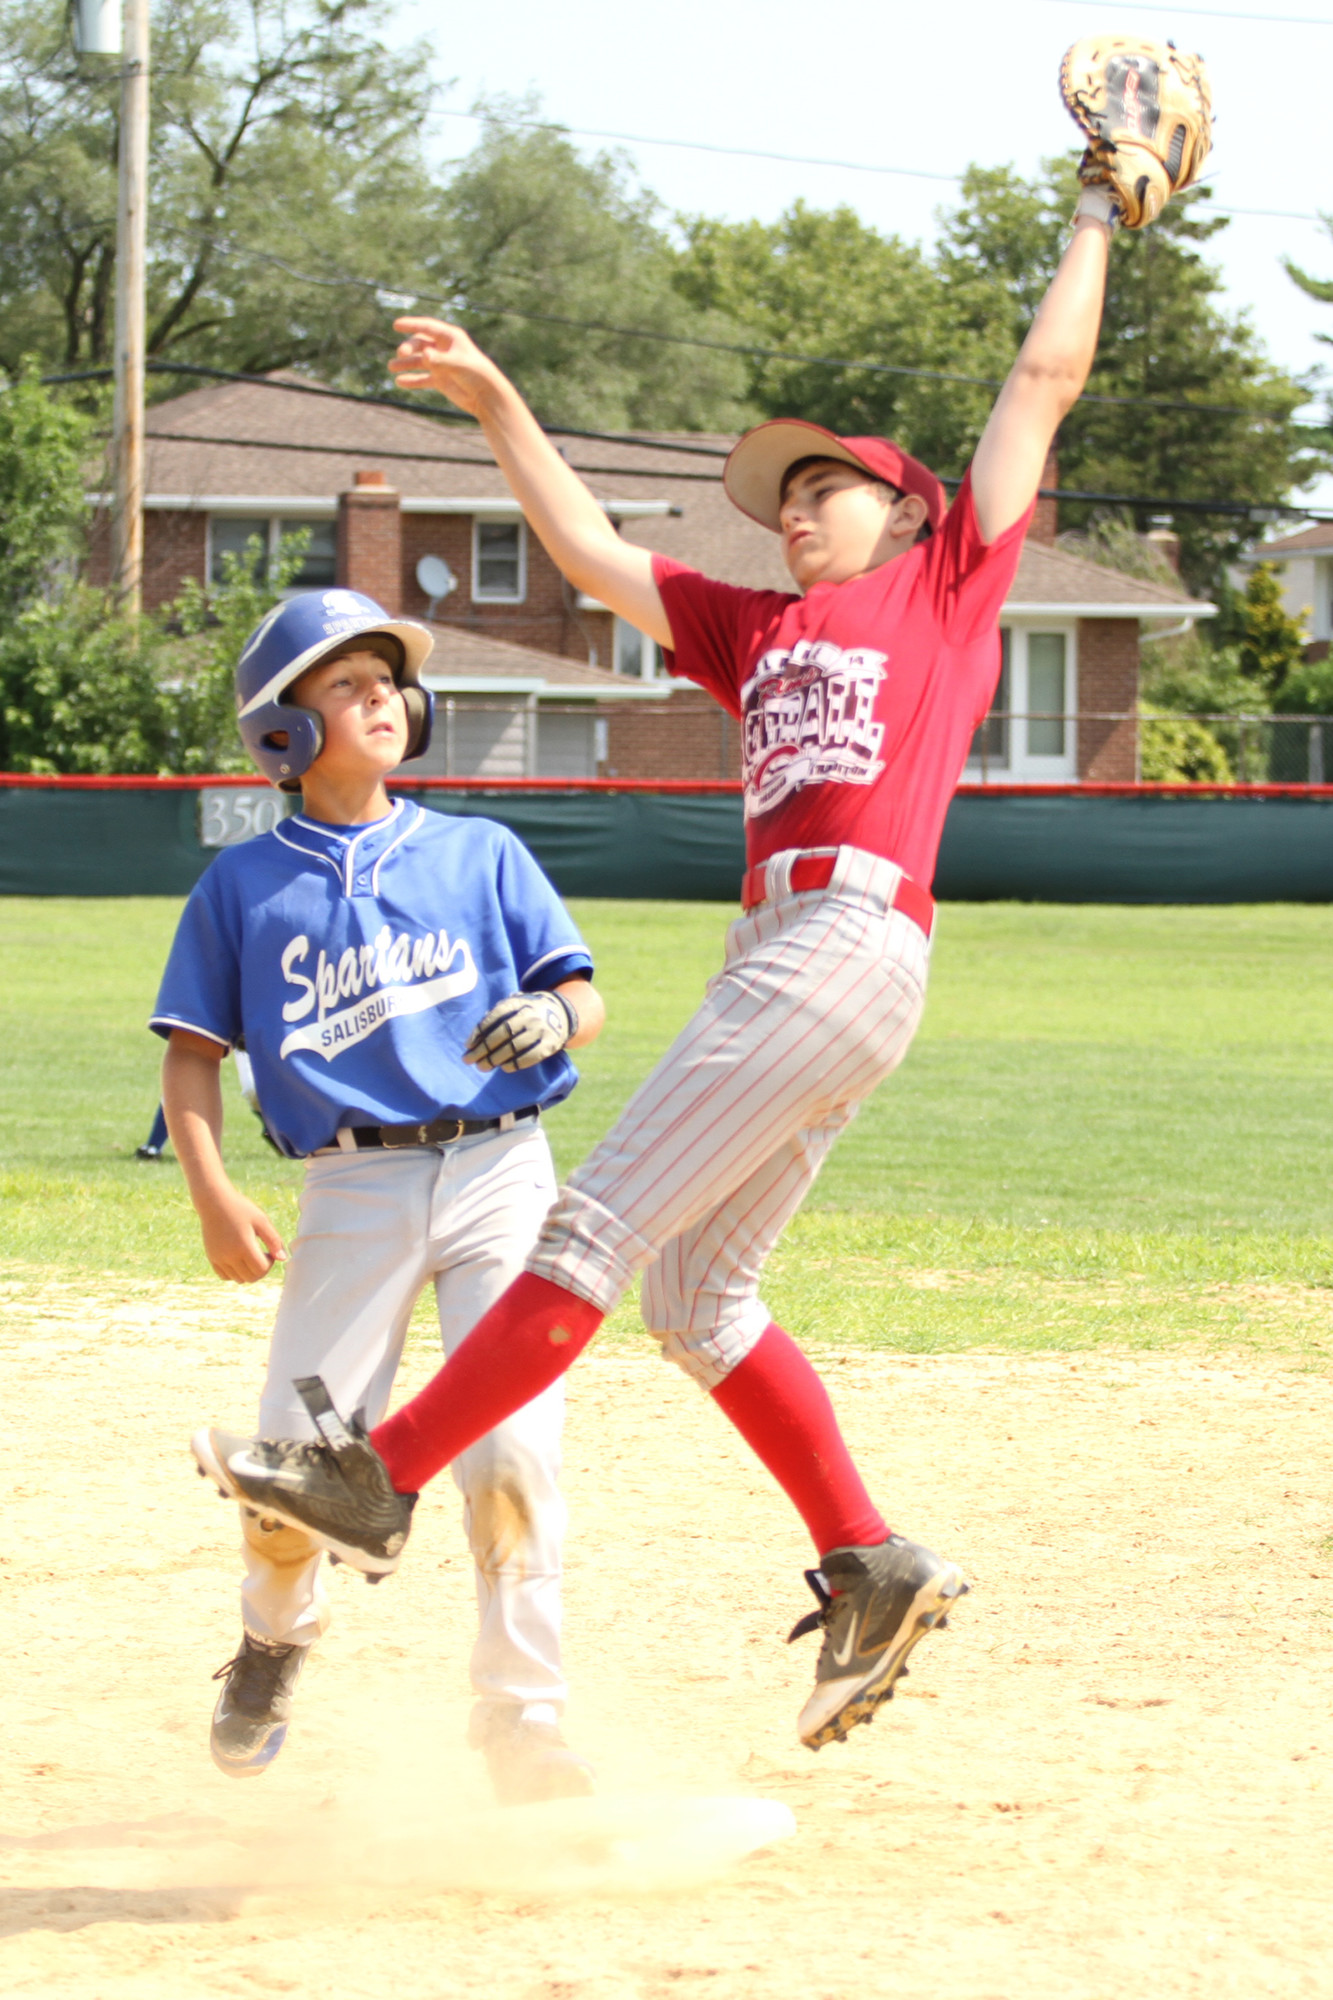 Daniel Hanrahan, 13, snagged an errant throw on the baseball field.